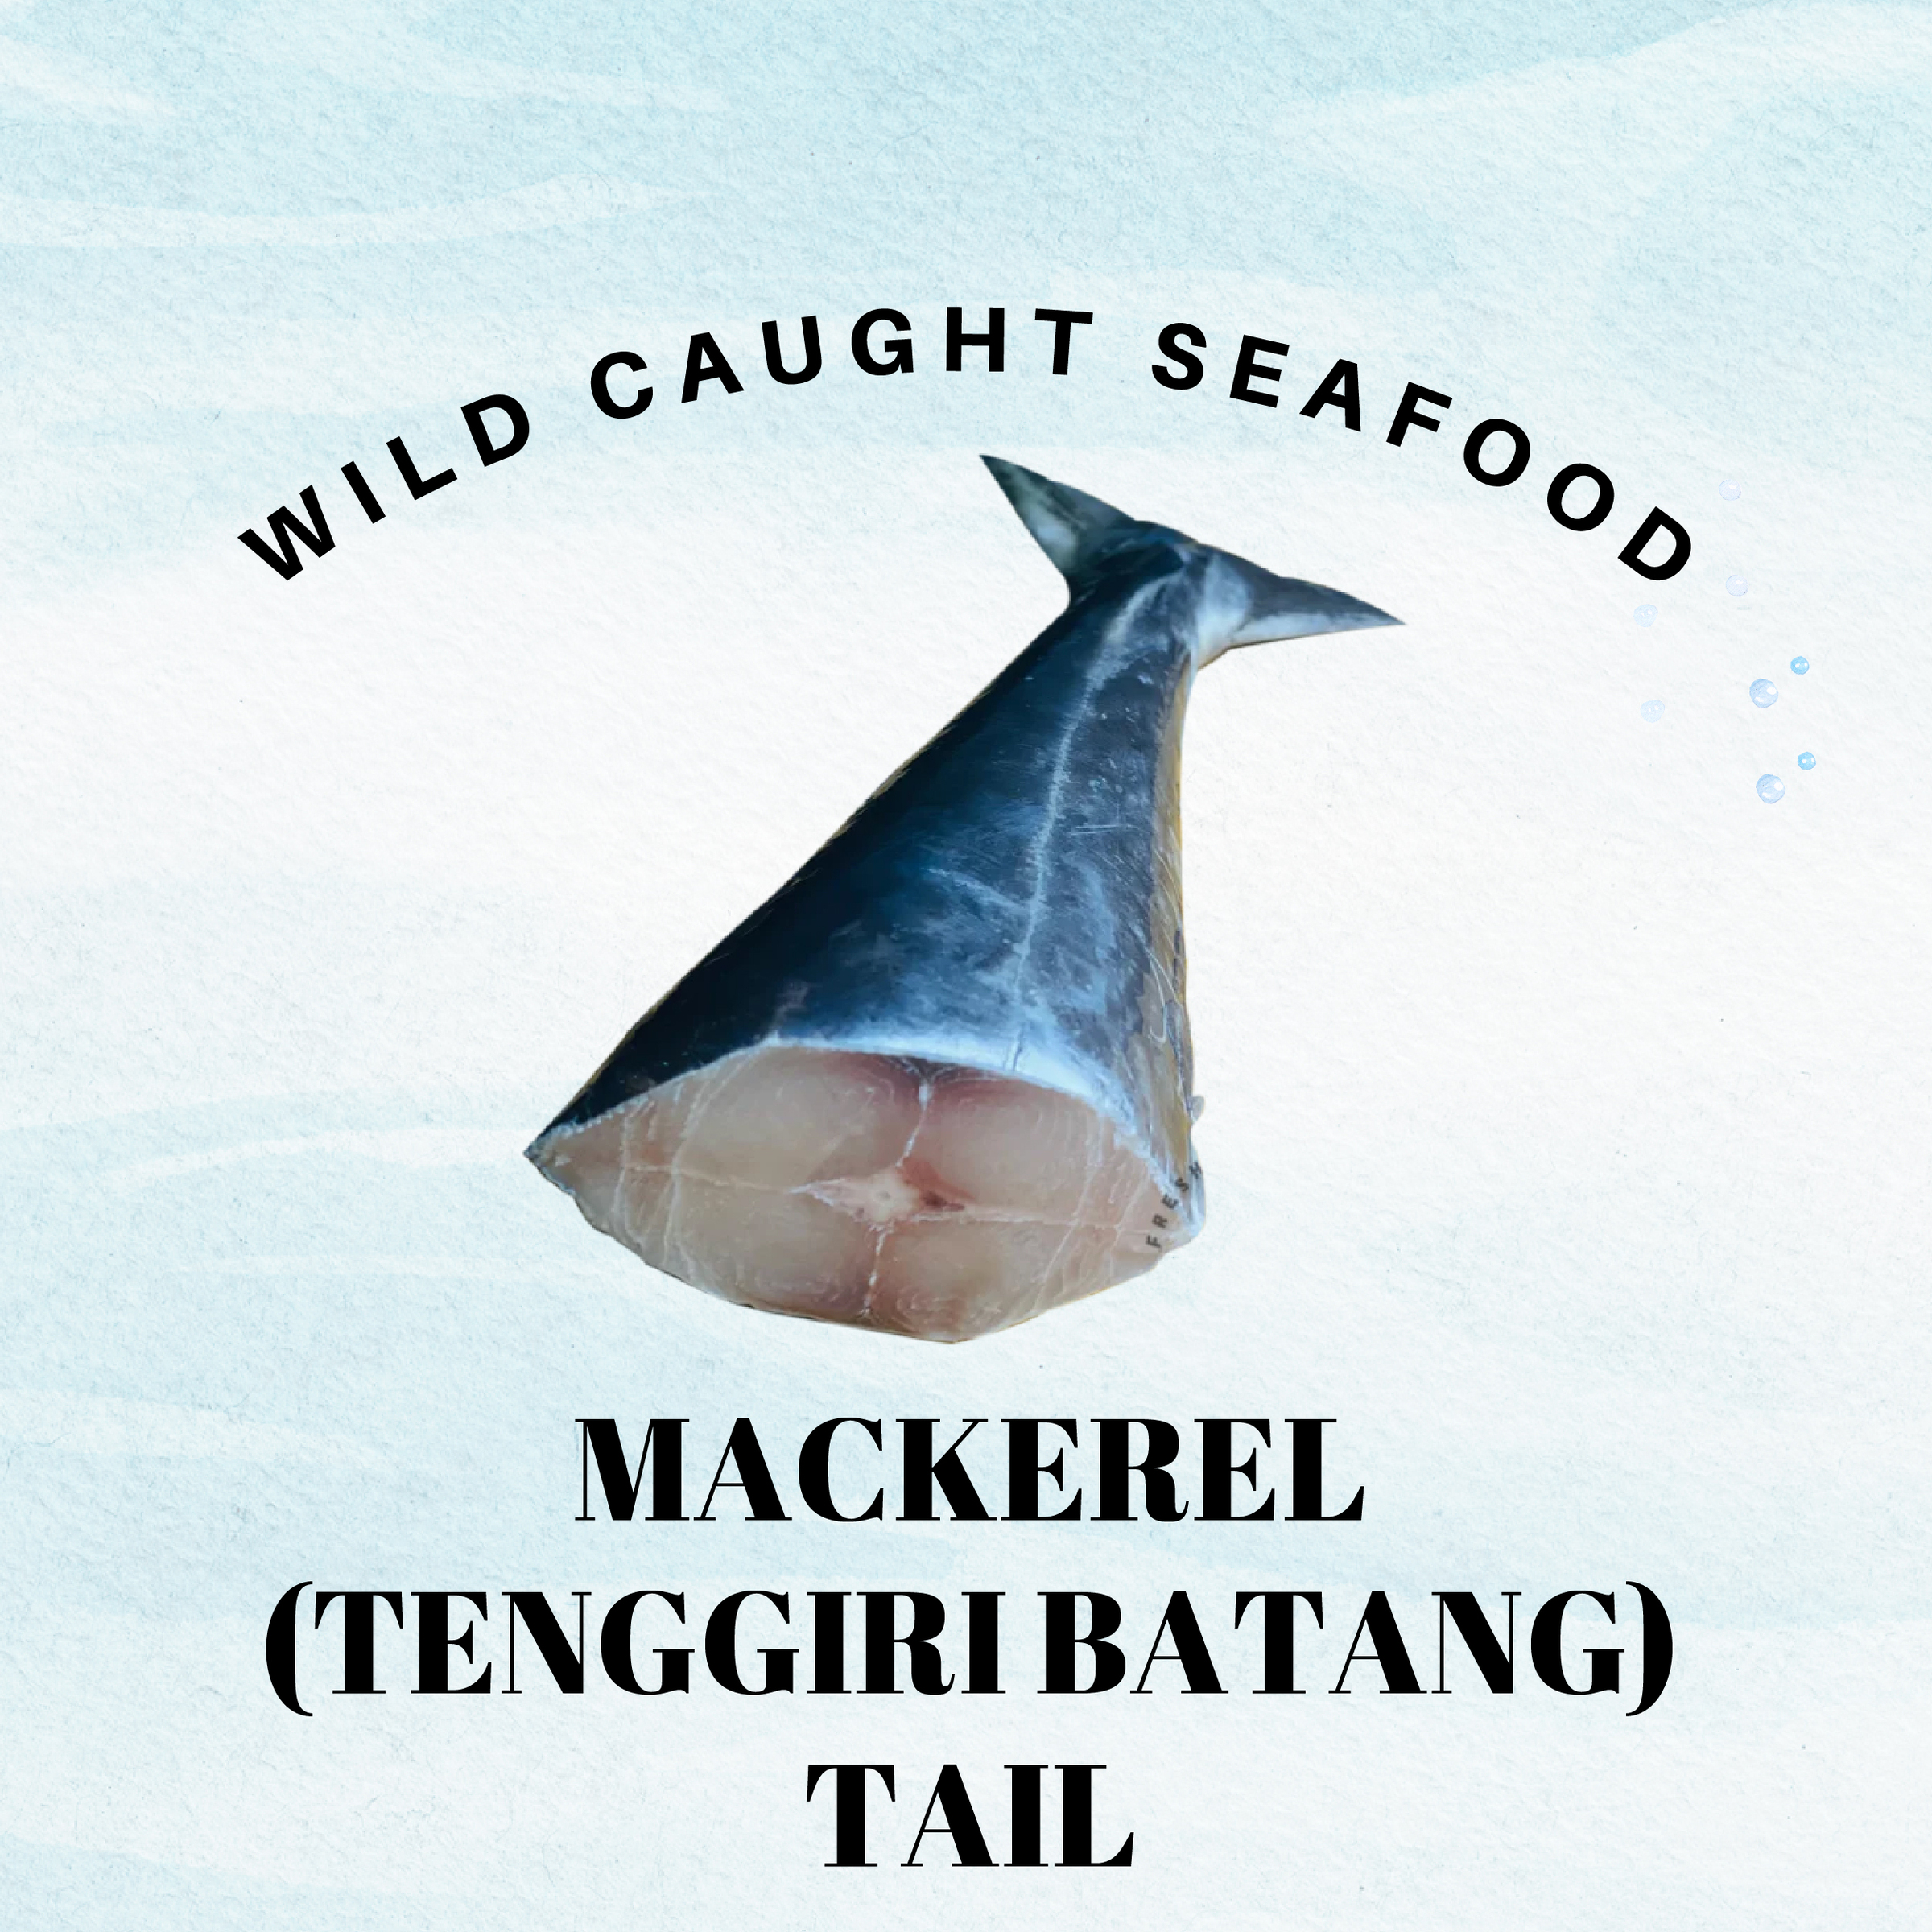 Fish Photo2_MAckerel - Tenggiri Batang Tail